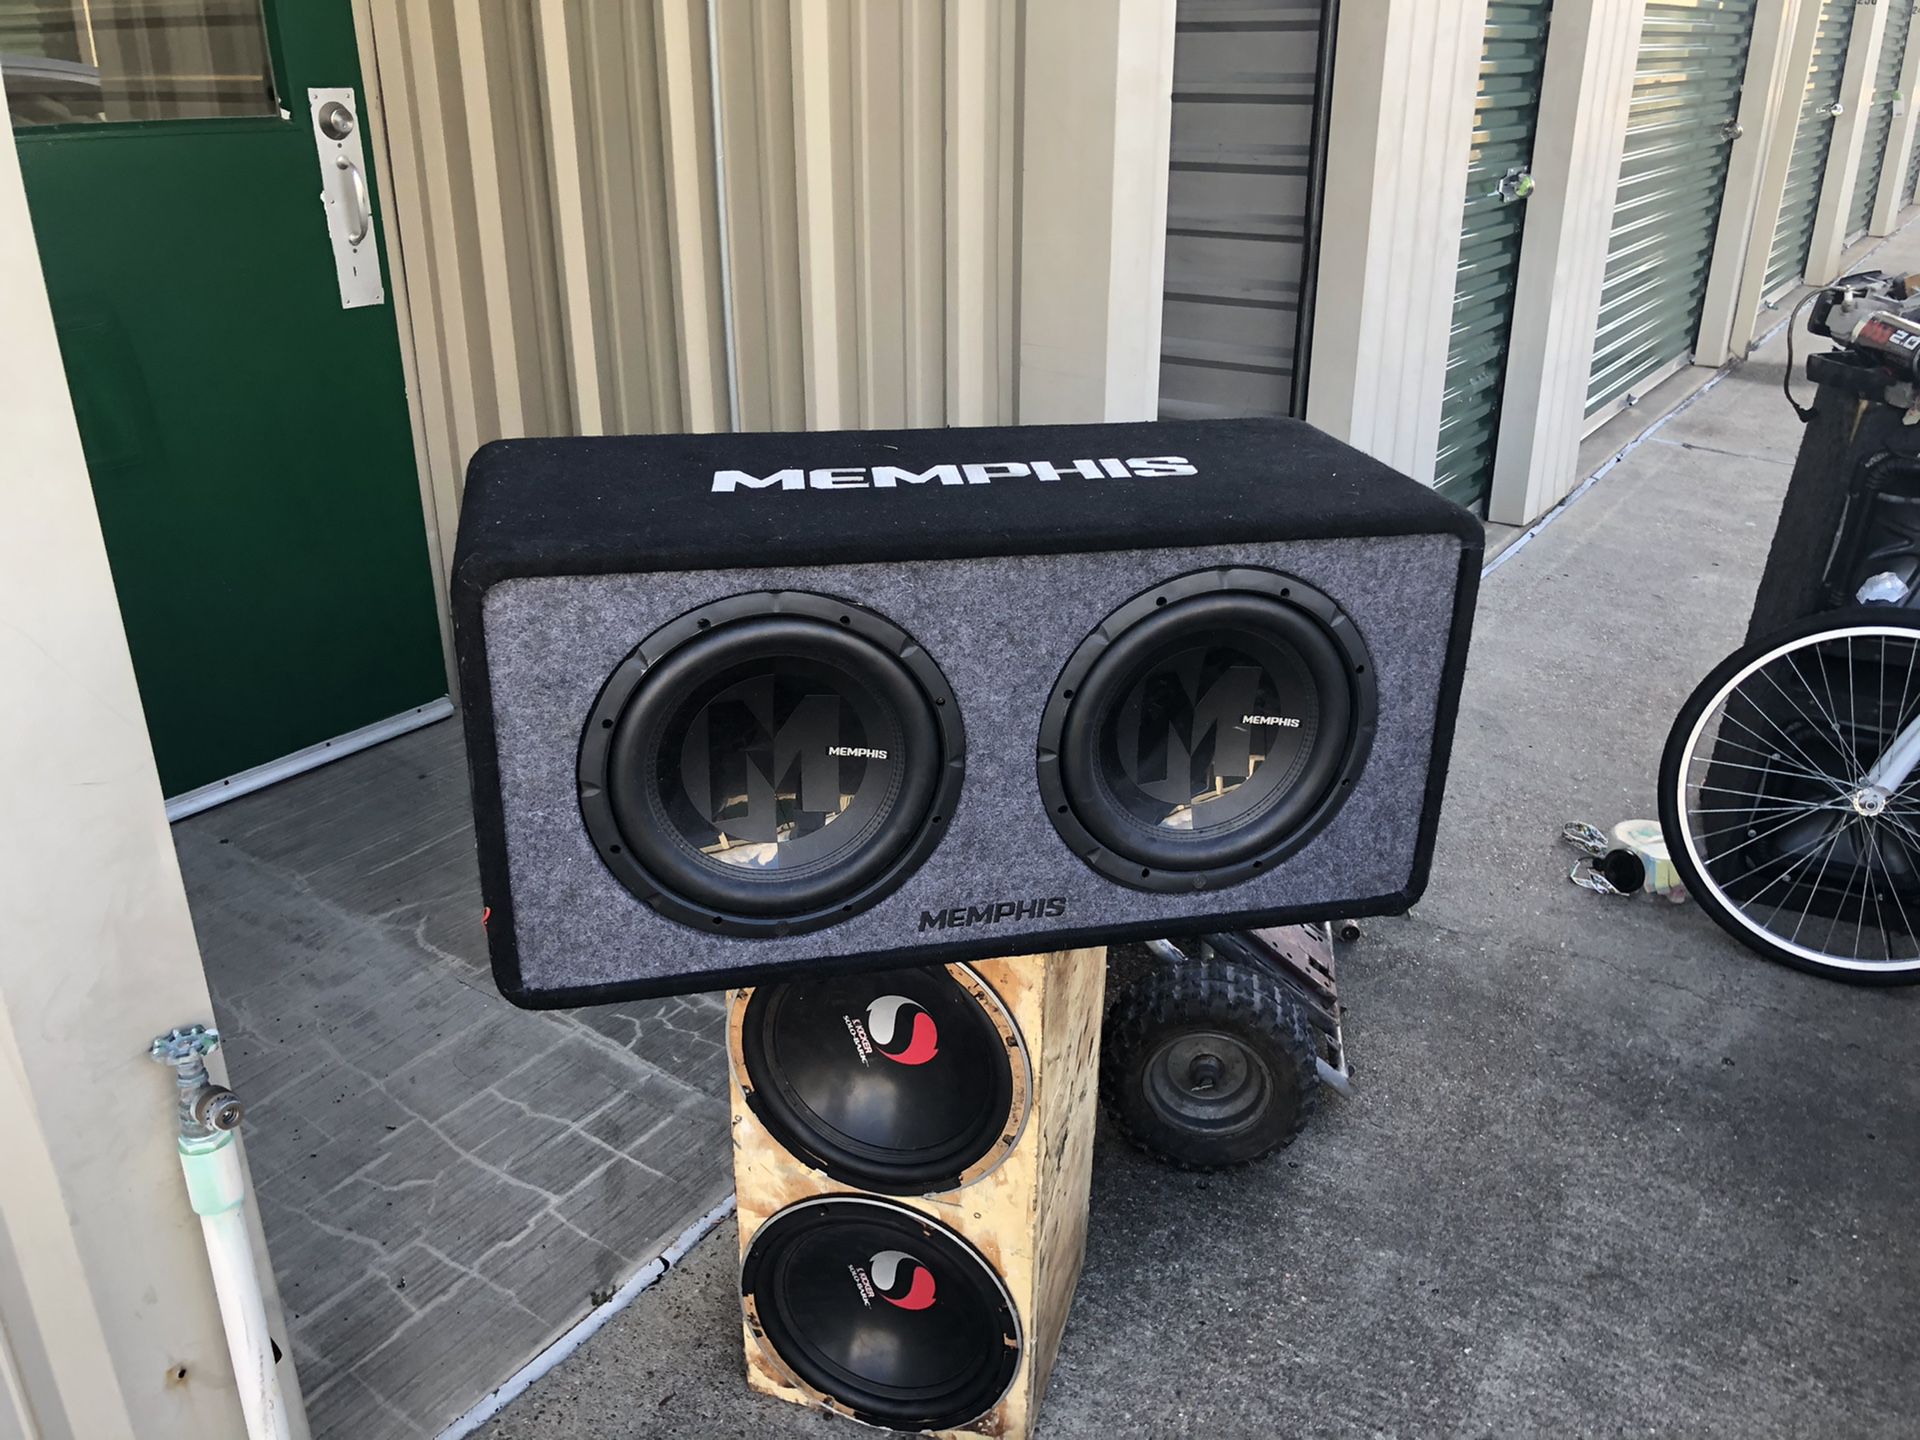 Memphis speakers